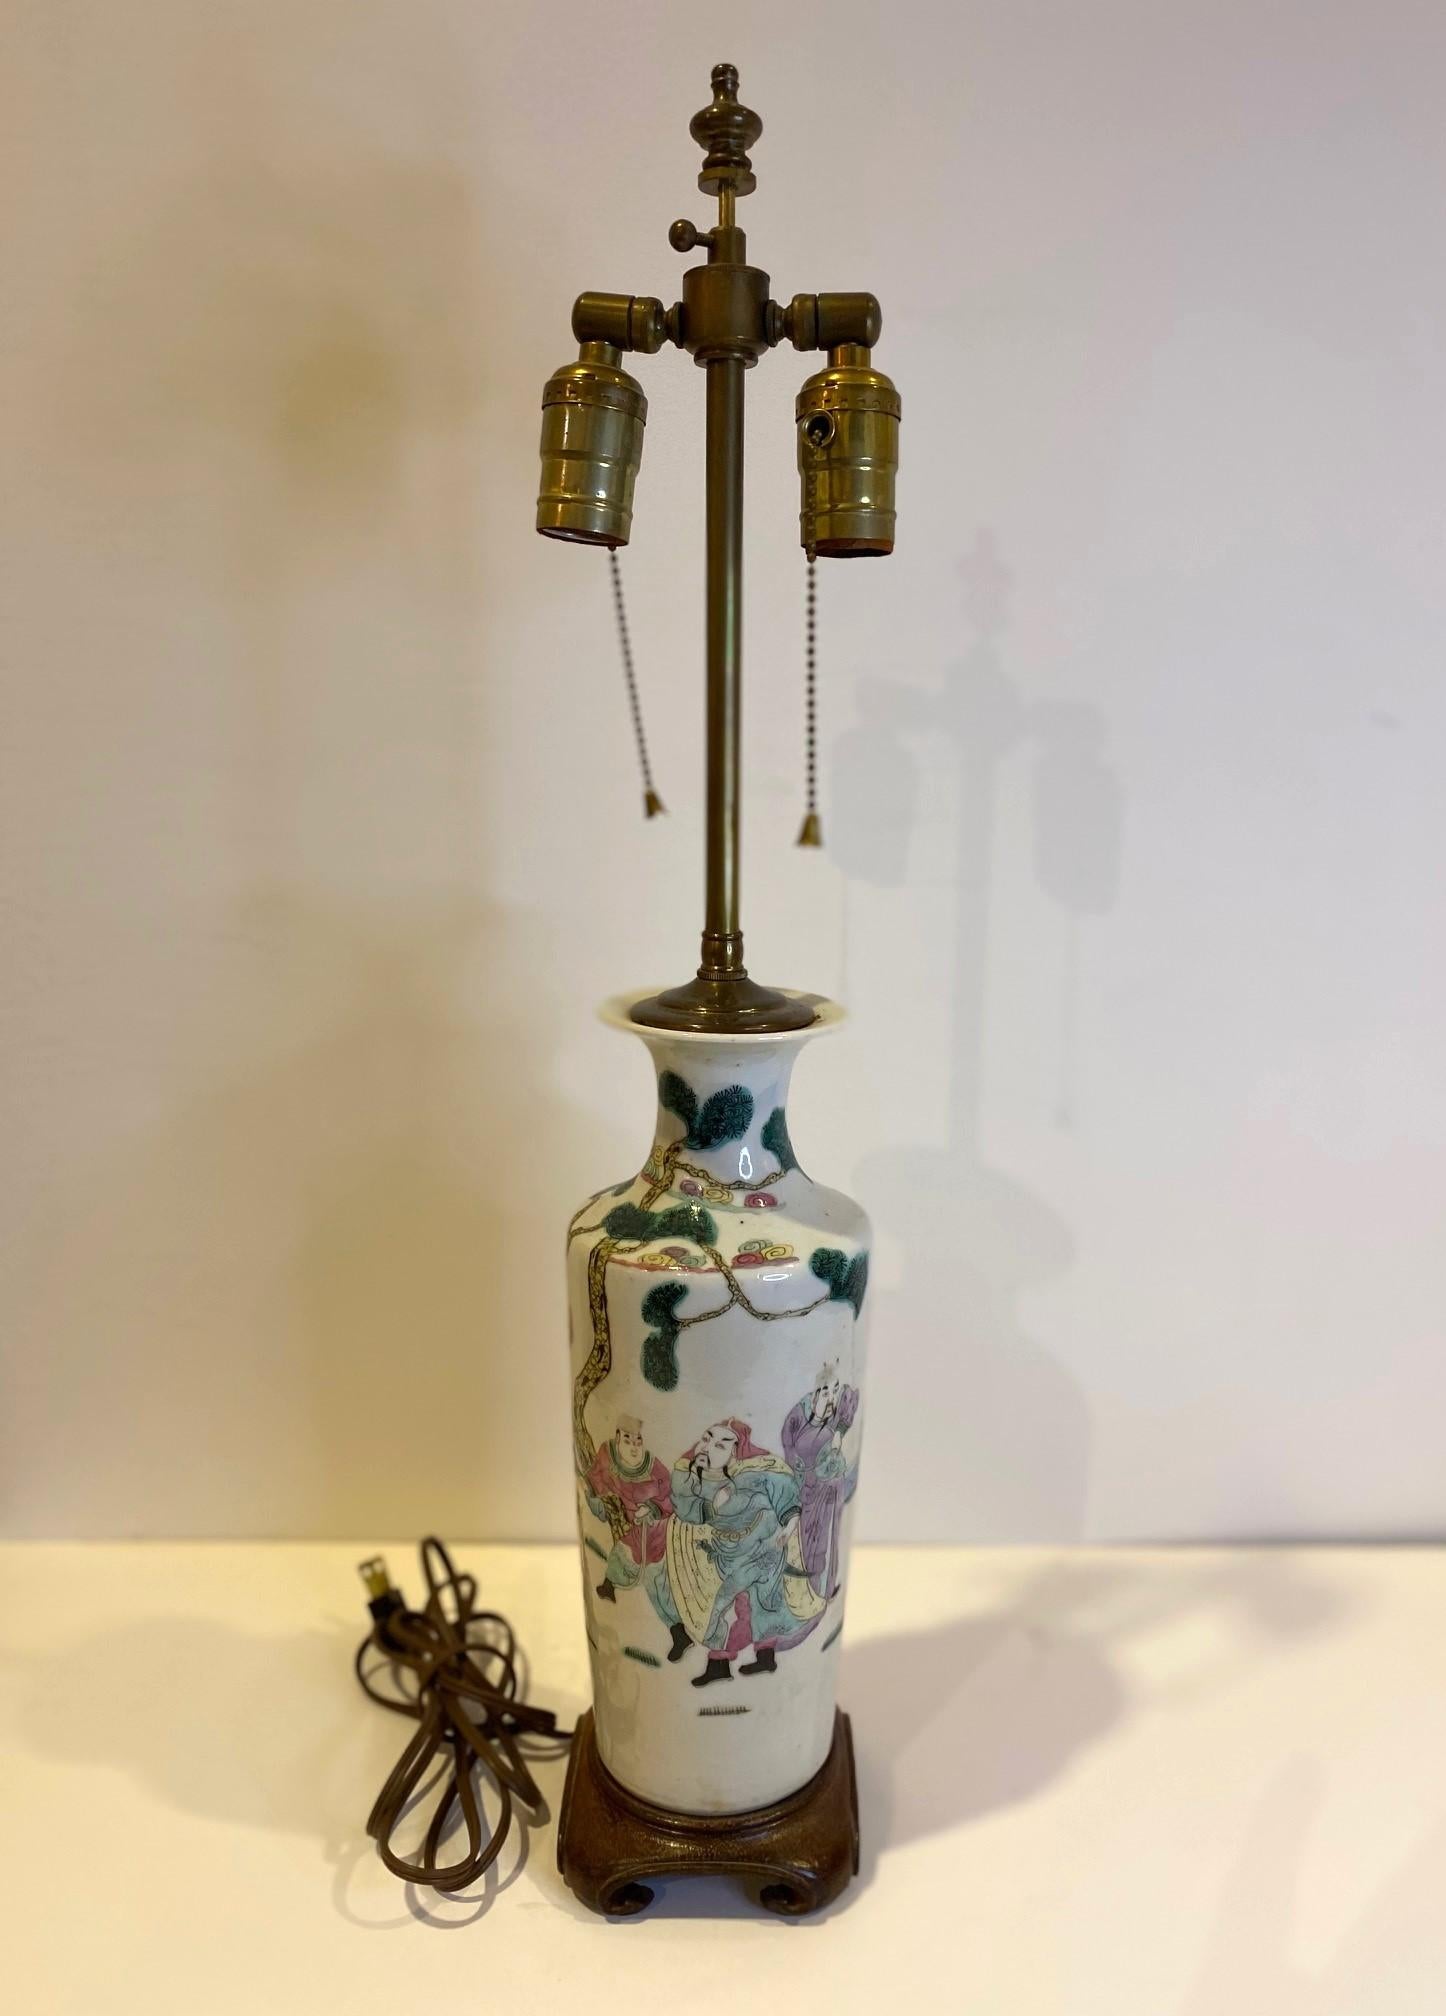 Très belle lampe vase en porcelaine chinoise peinte à la main au 19ème siècle, avec une double douille suspendue sur une base en bois tourné.  Circa 1820.